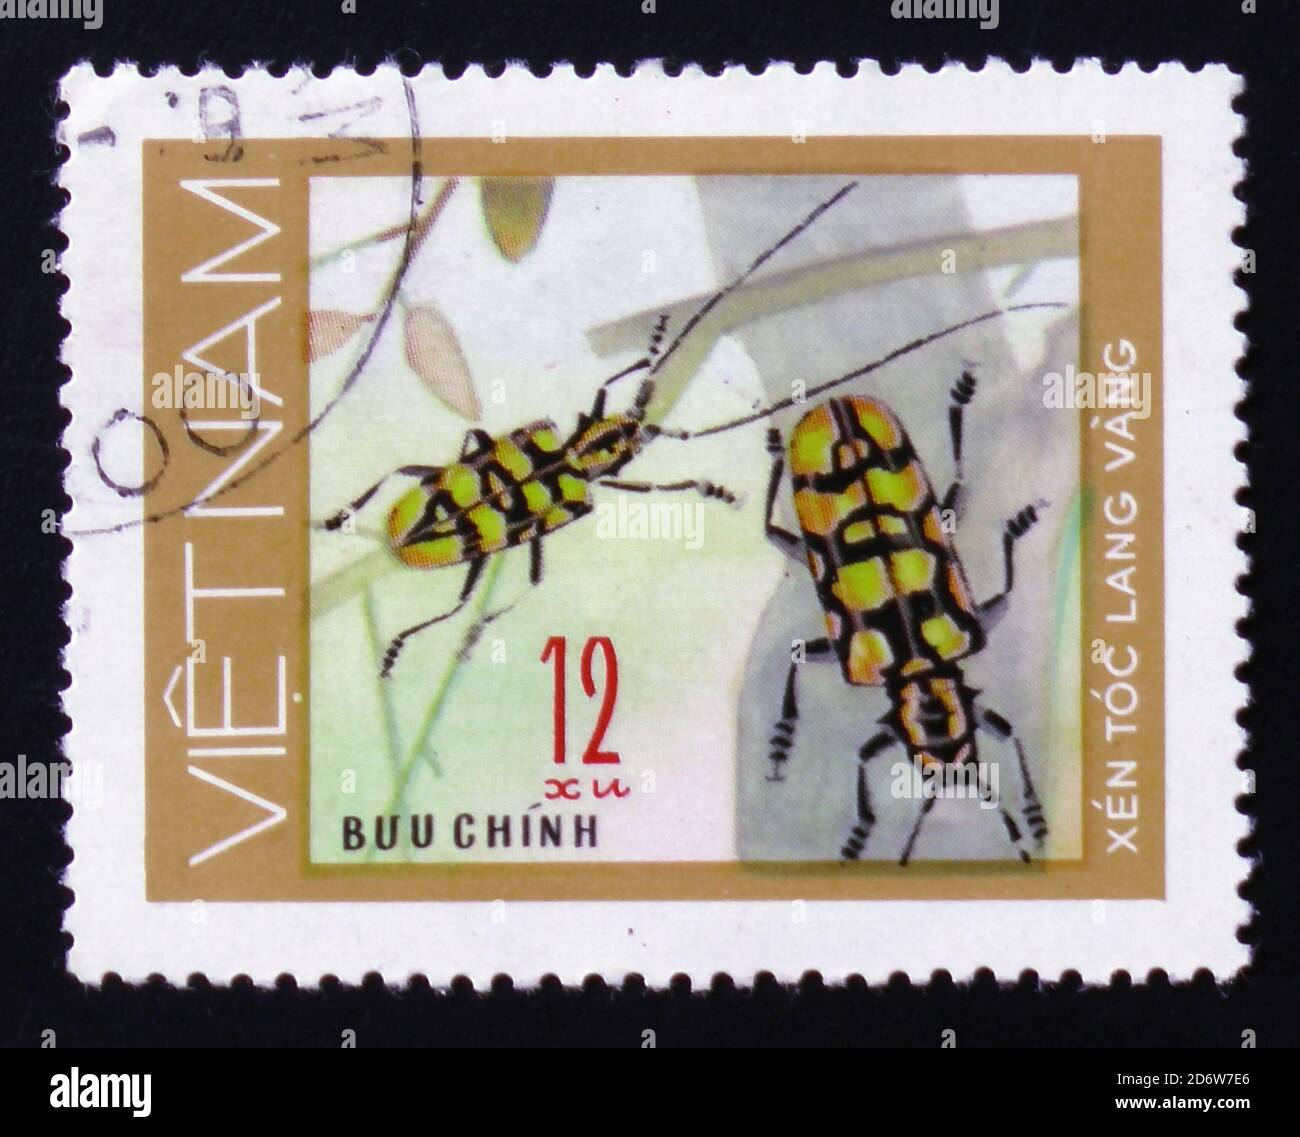 MOSCA, RUSSIA - 12 FEBBRAIO 2017: Un francobollo stampato in VIETNAM, mostra insetto animale lungo corno scarabeo, 12 monete, circa 1981 Foto Stock